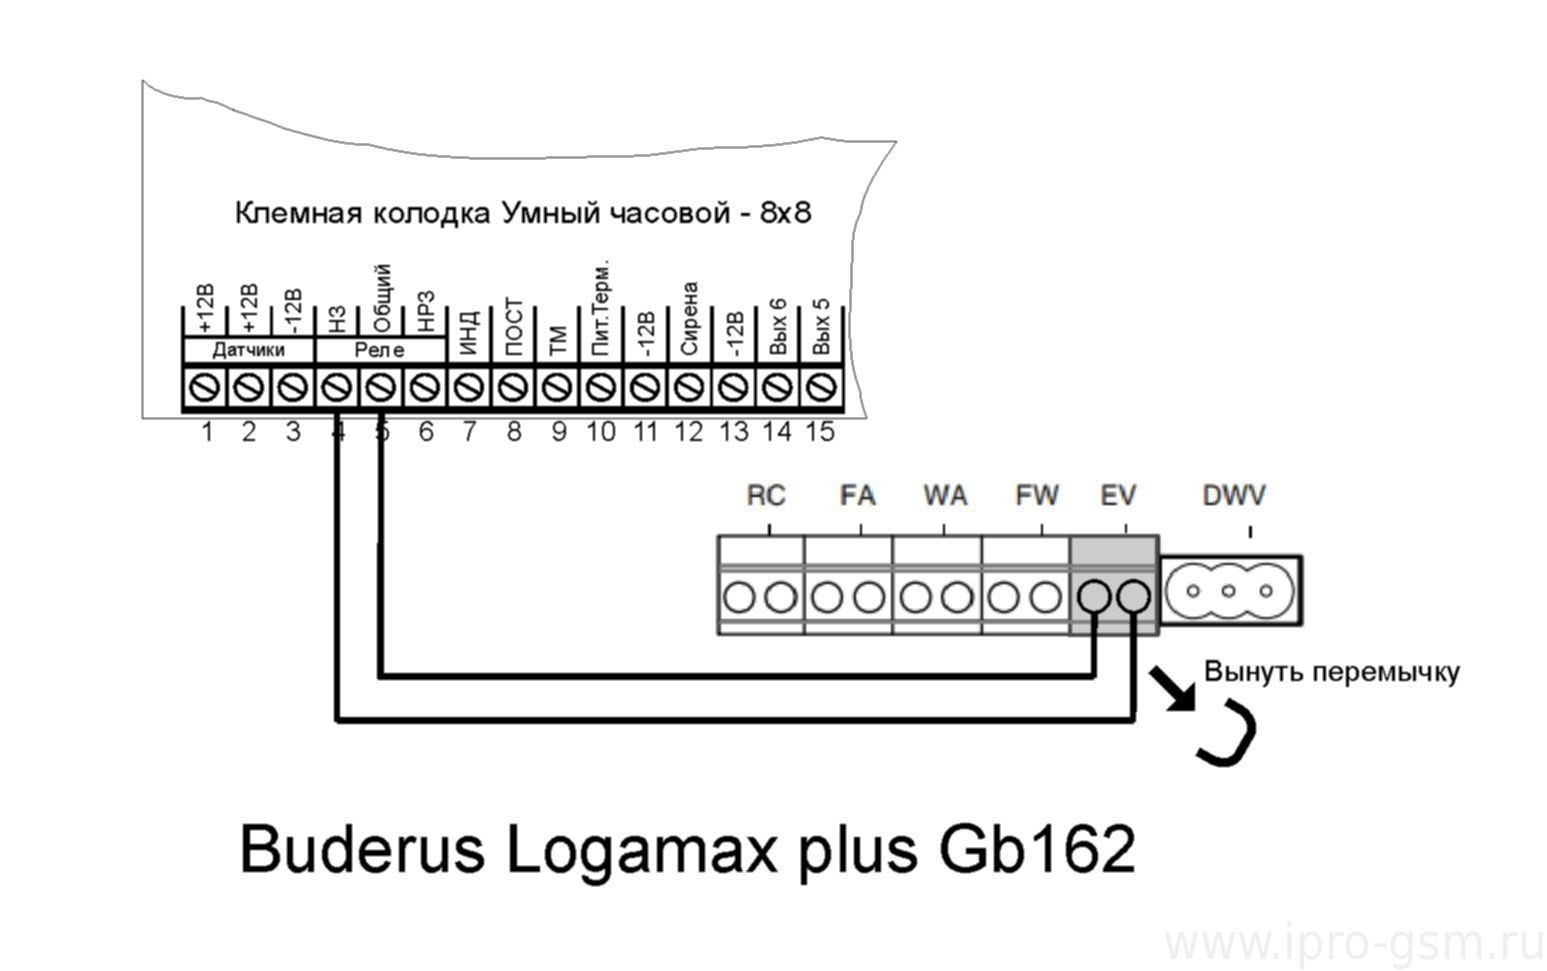 Схема подключения Часовой 8х8 к котлу Buderus Logamax plus